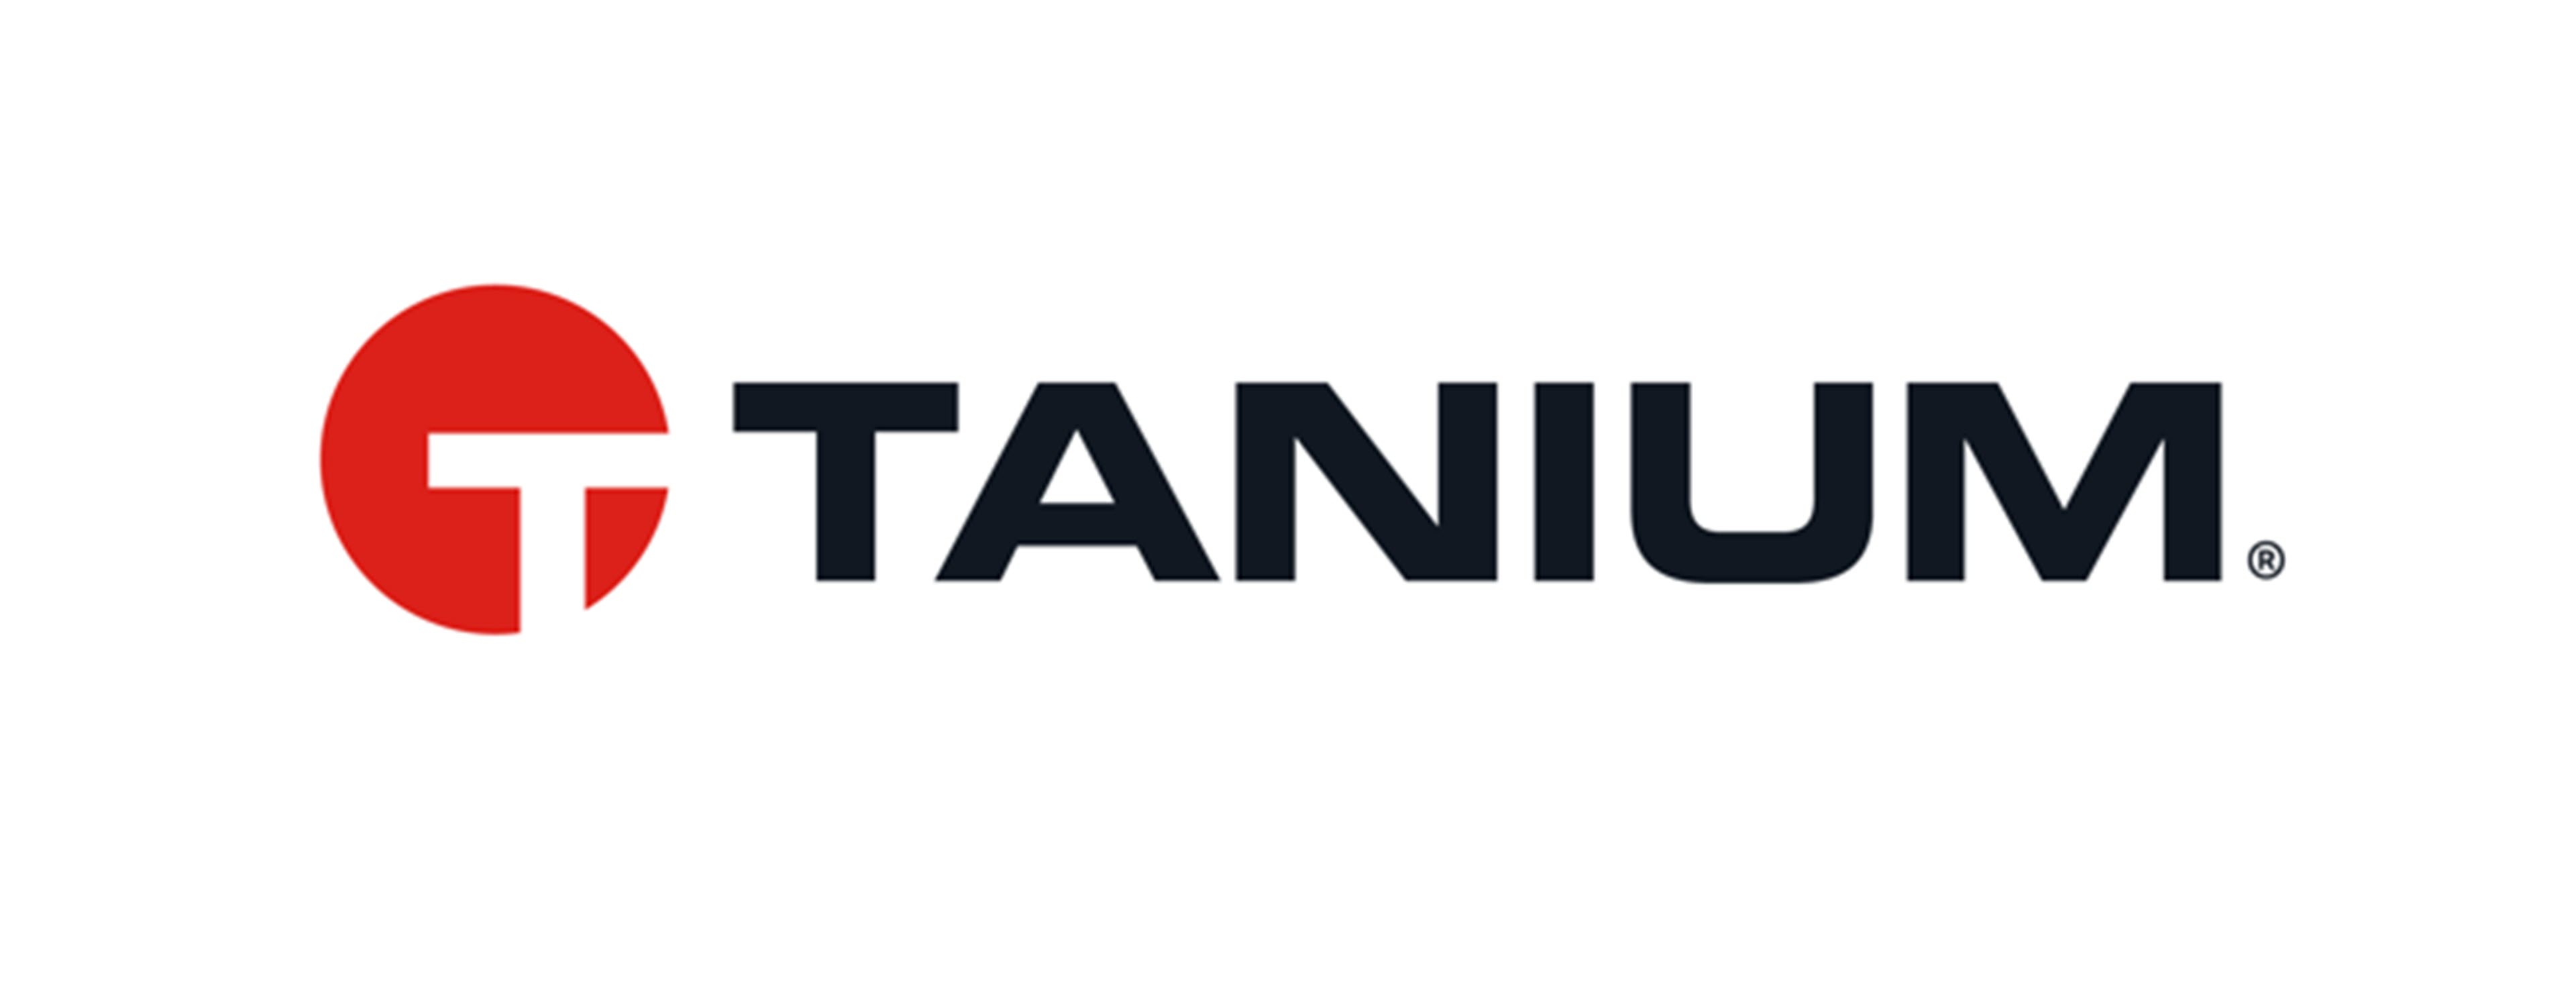             Logo Tanium        